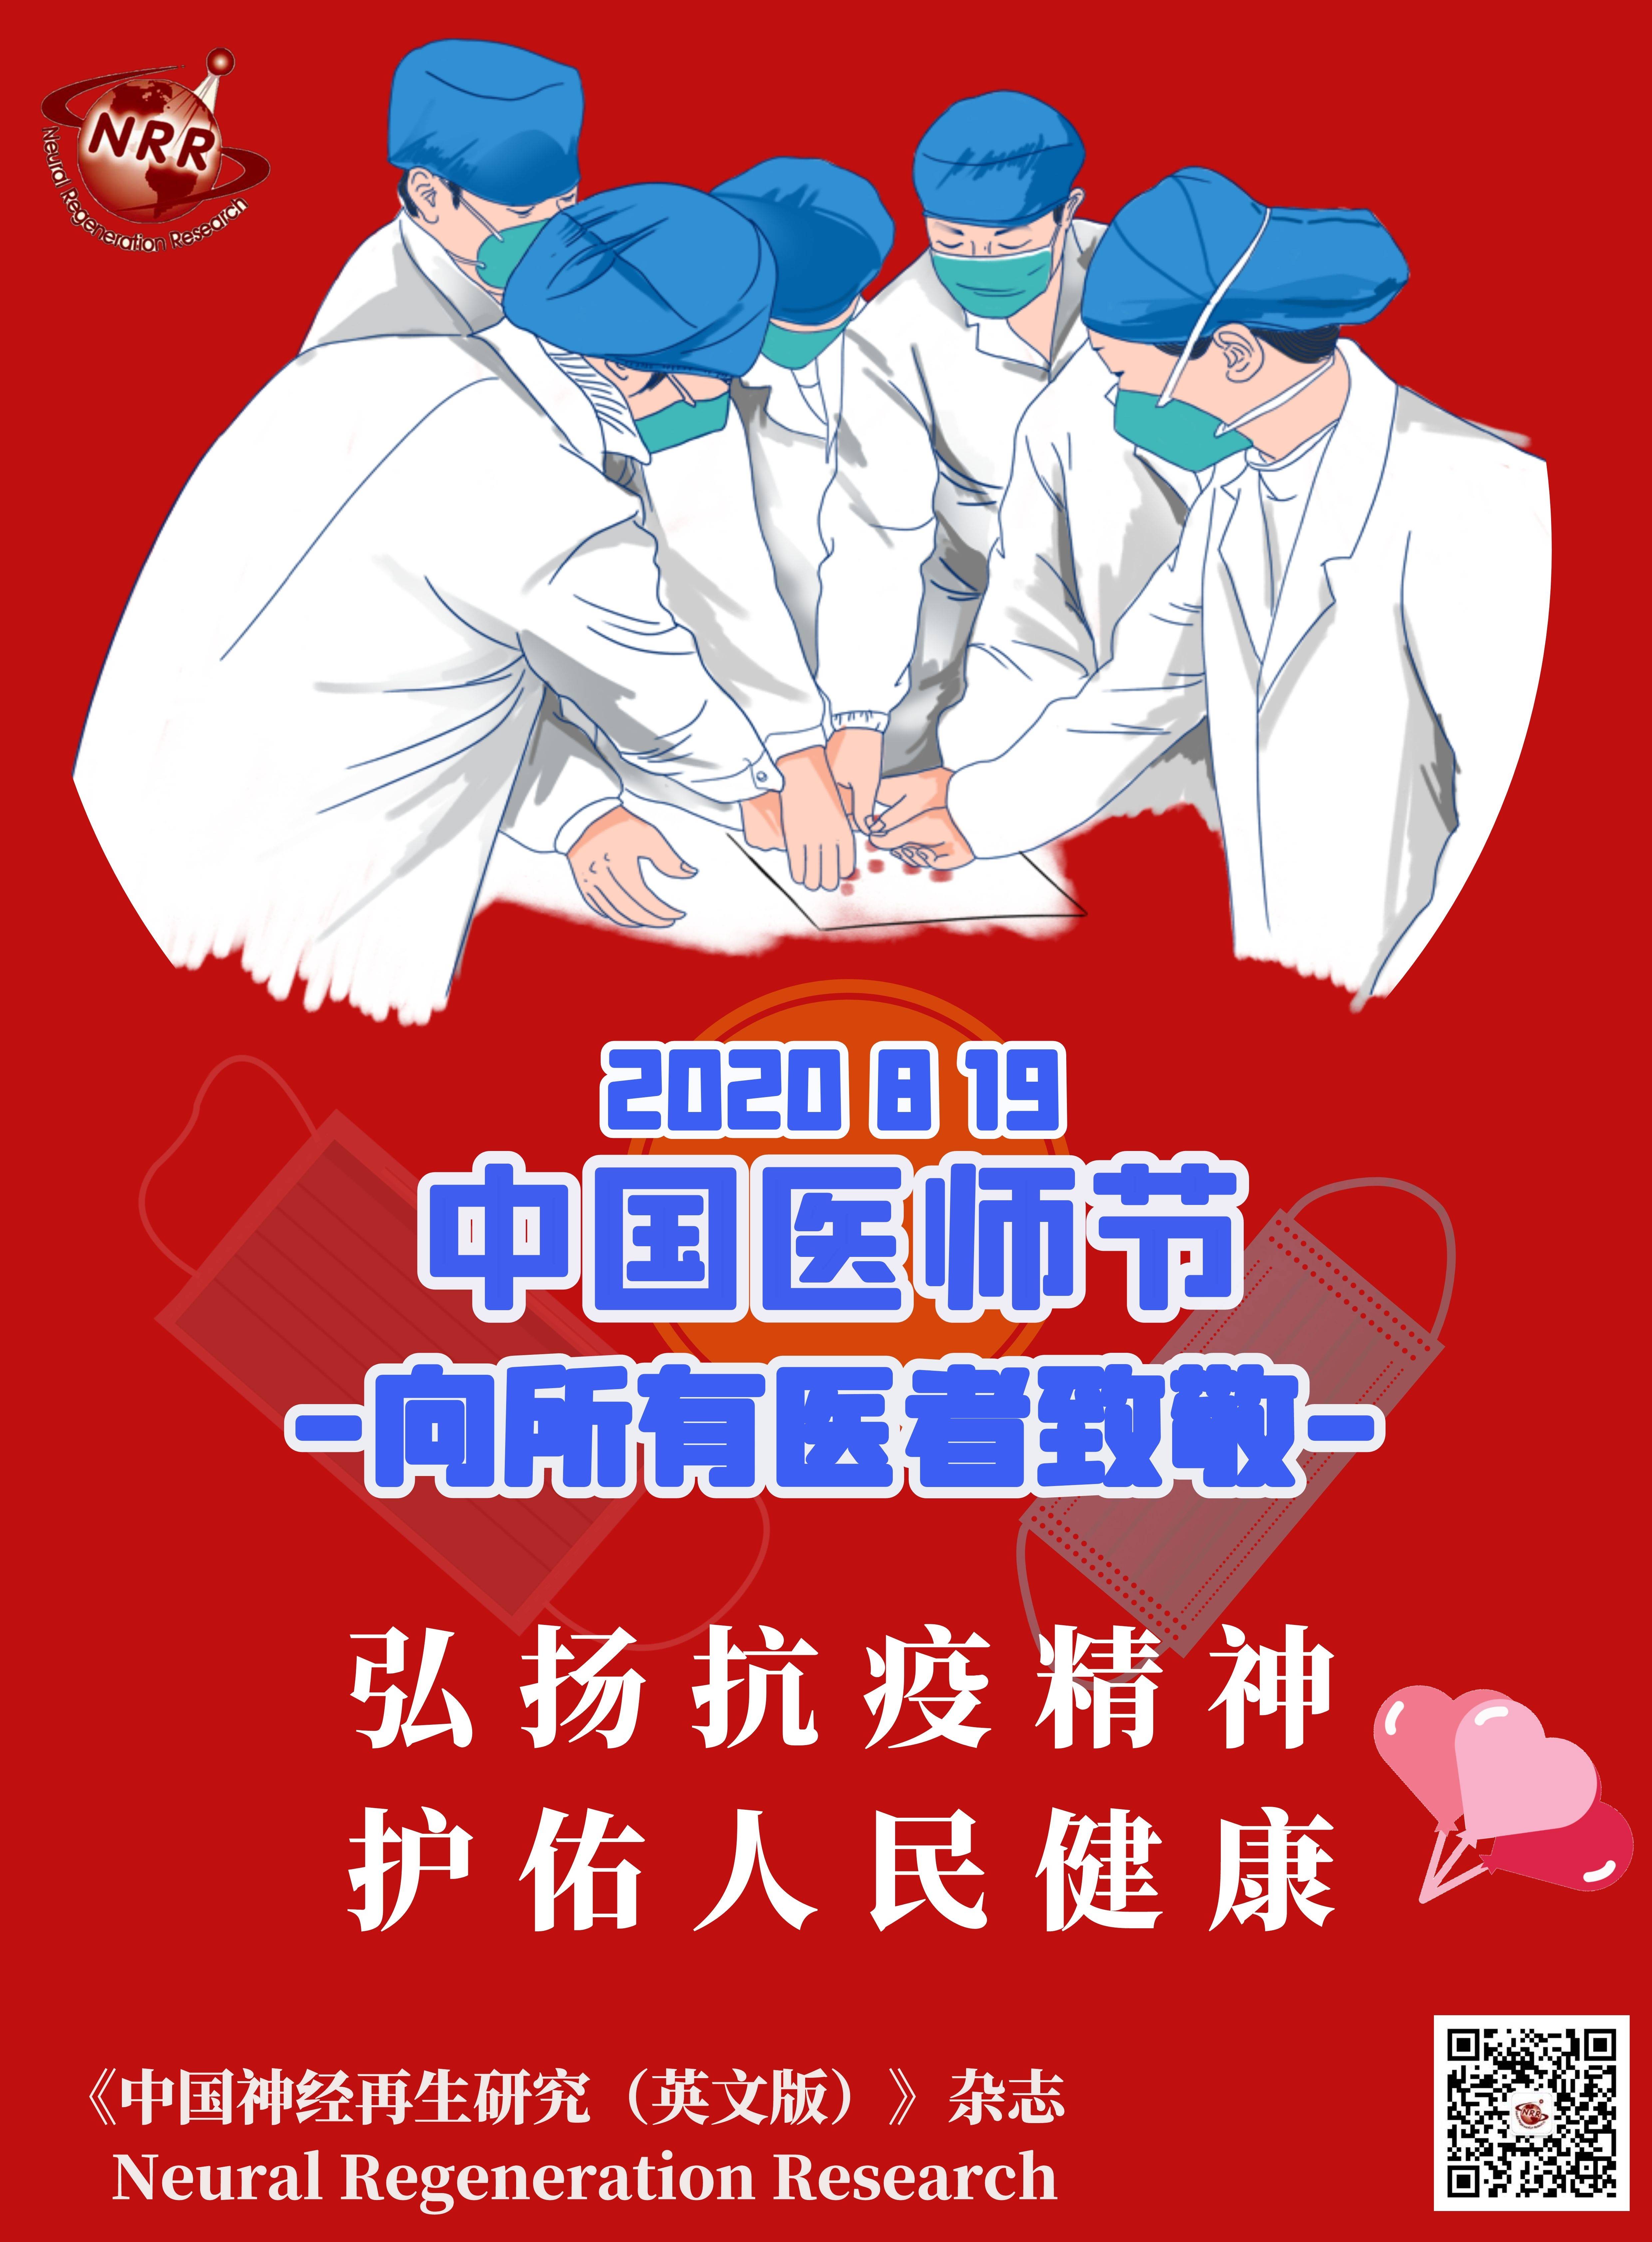 中国医师节2021年主题图片